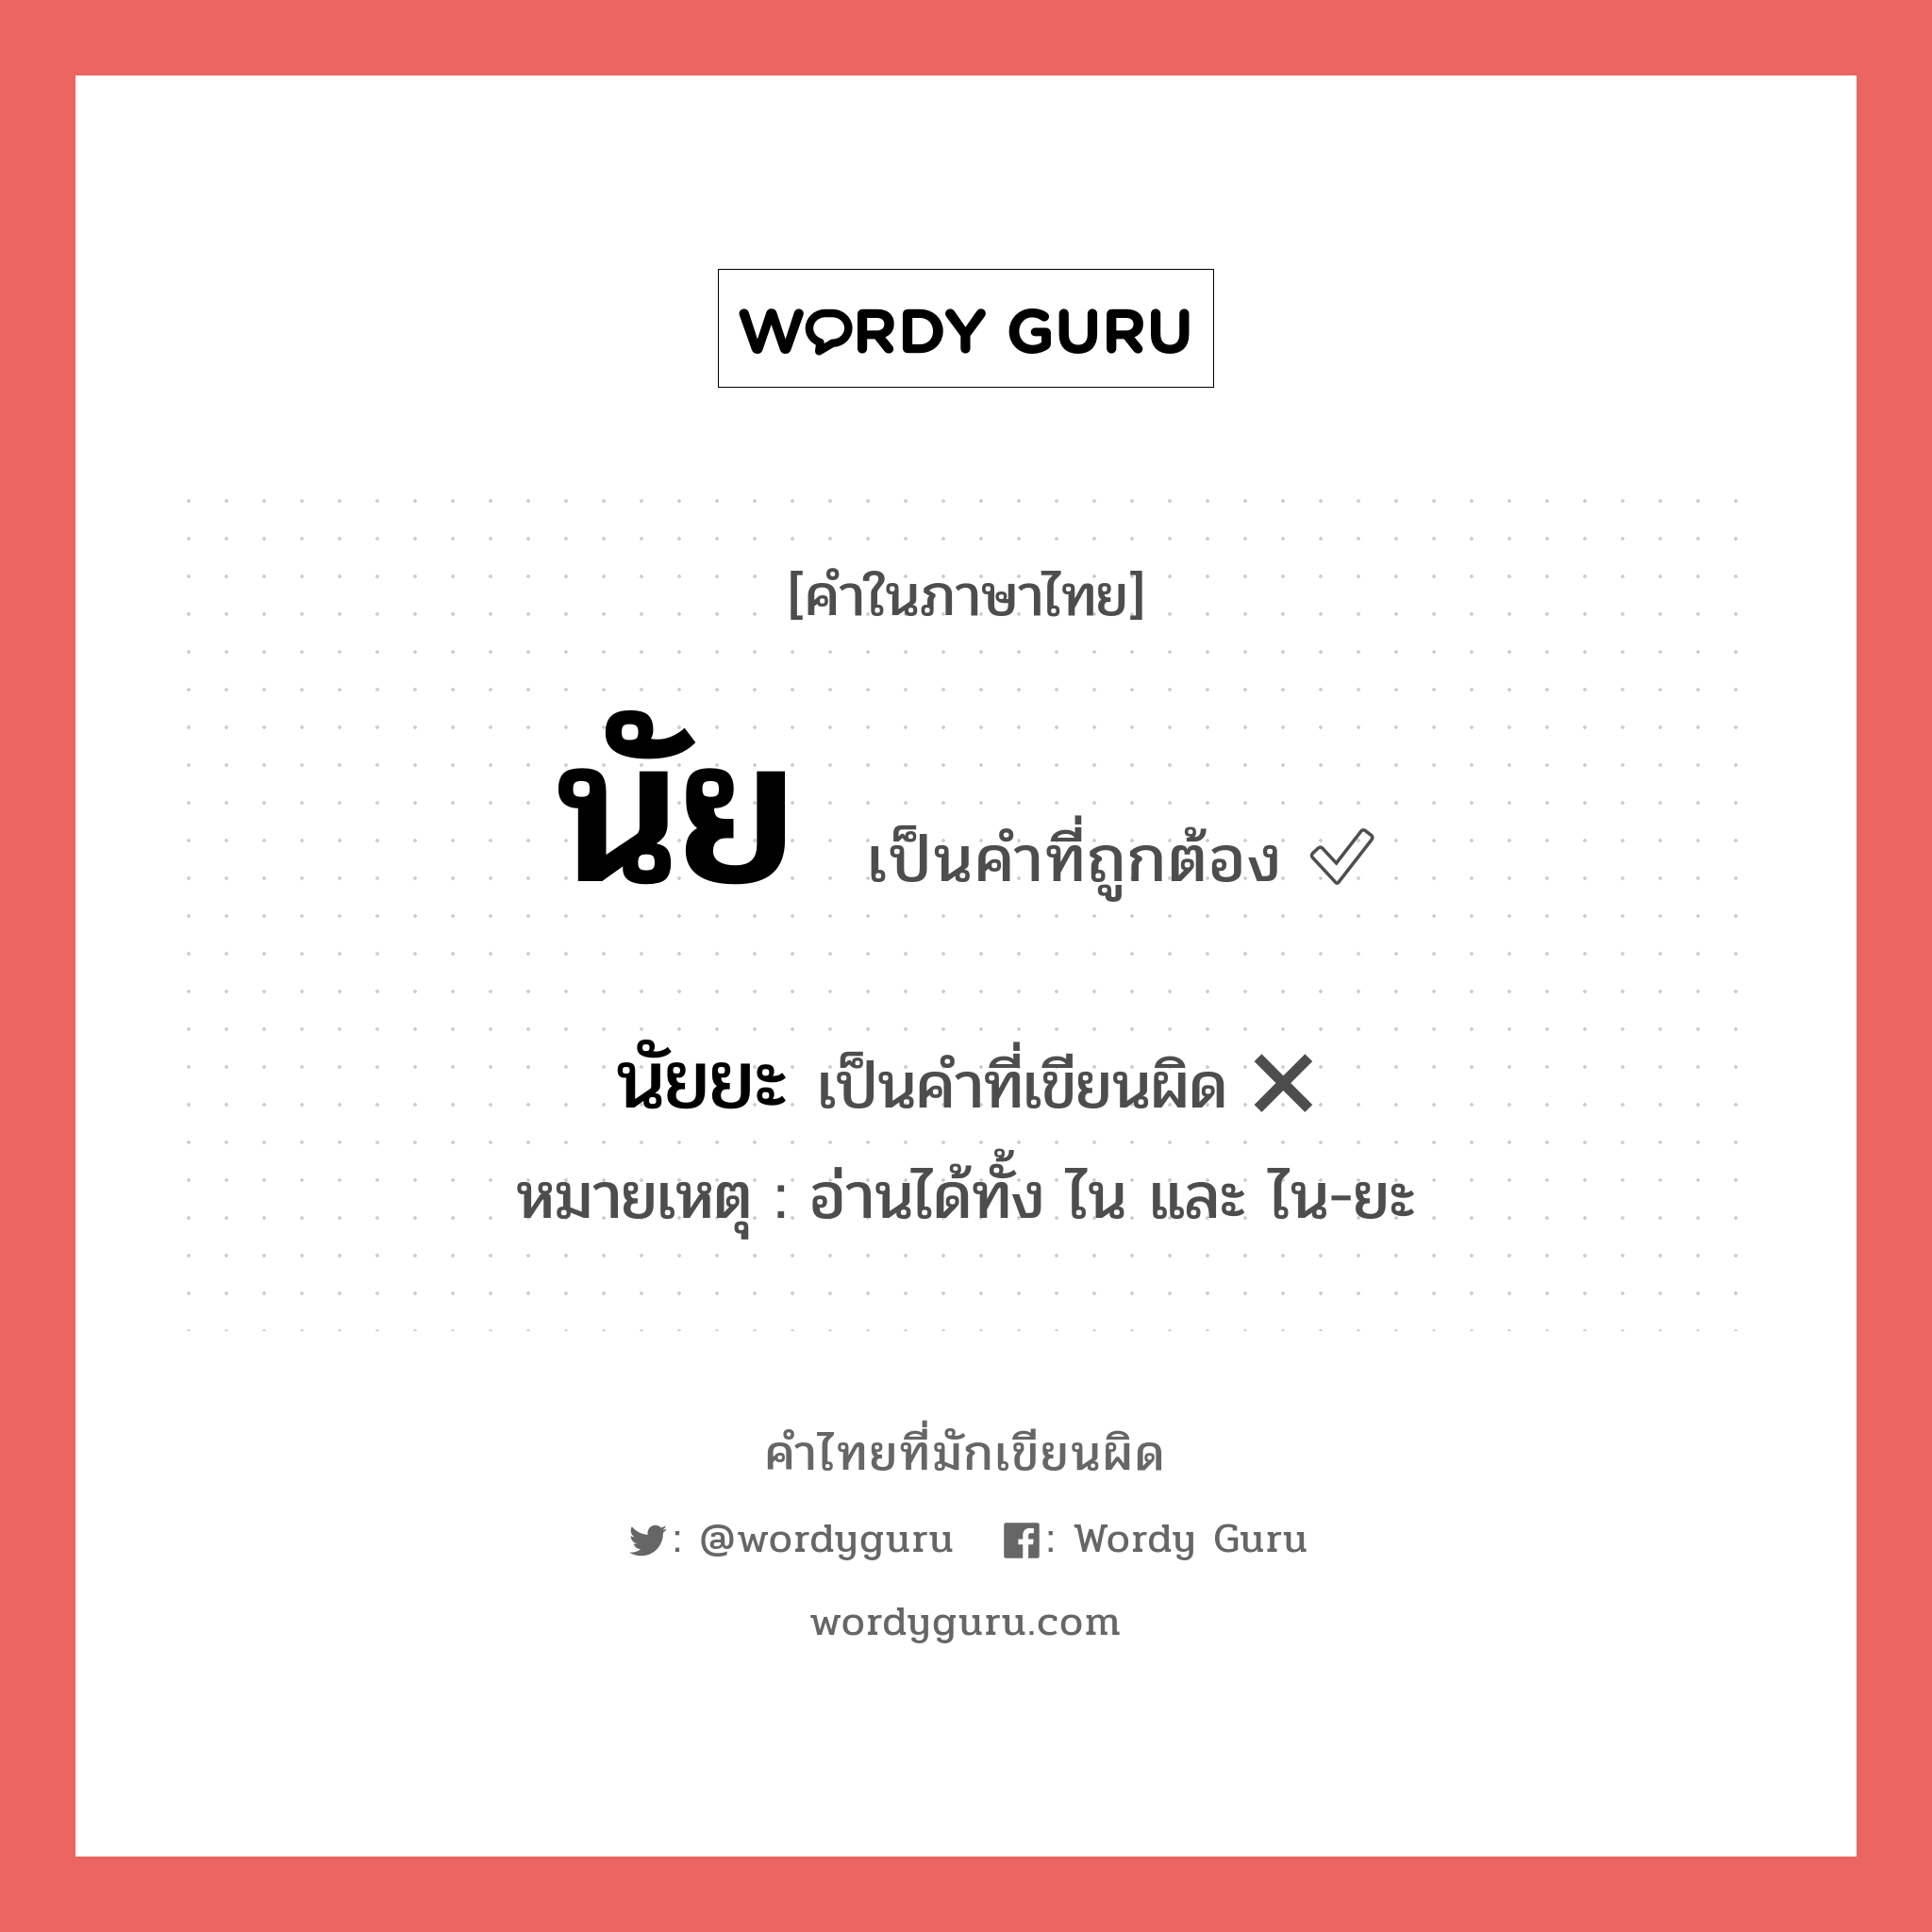 นัย หรือ นัยยะ เขียนยังไง? คำไหนเขียนถูก?, คำในภาษาไทยที่มักเขียนผิด นัย คำที่ผิด ❌ นัยยะ หมายเหตุ อ่านได้ทั้ง ไน และ ไน-ยะ